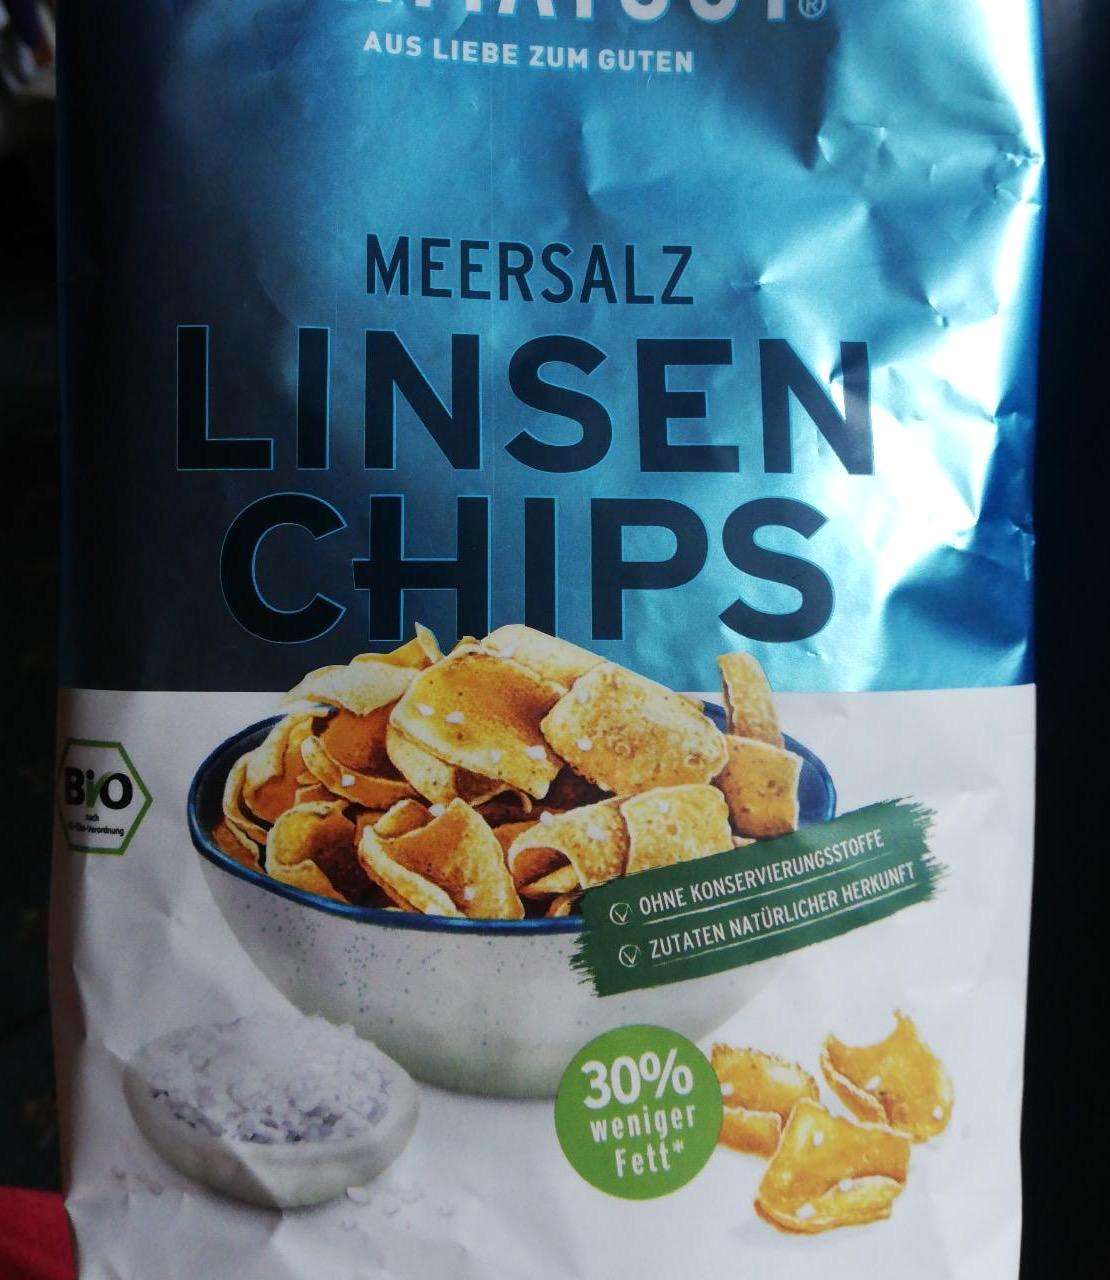 Képek - Linsen chips Heimatgut